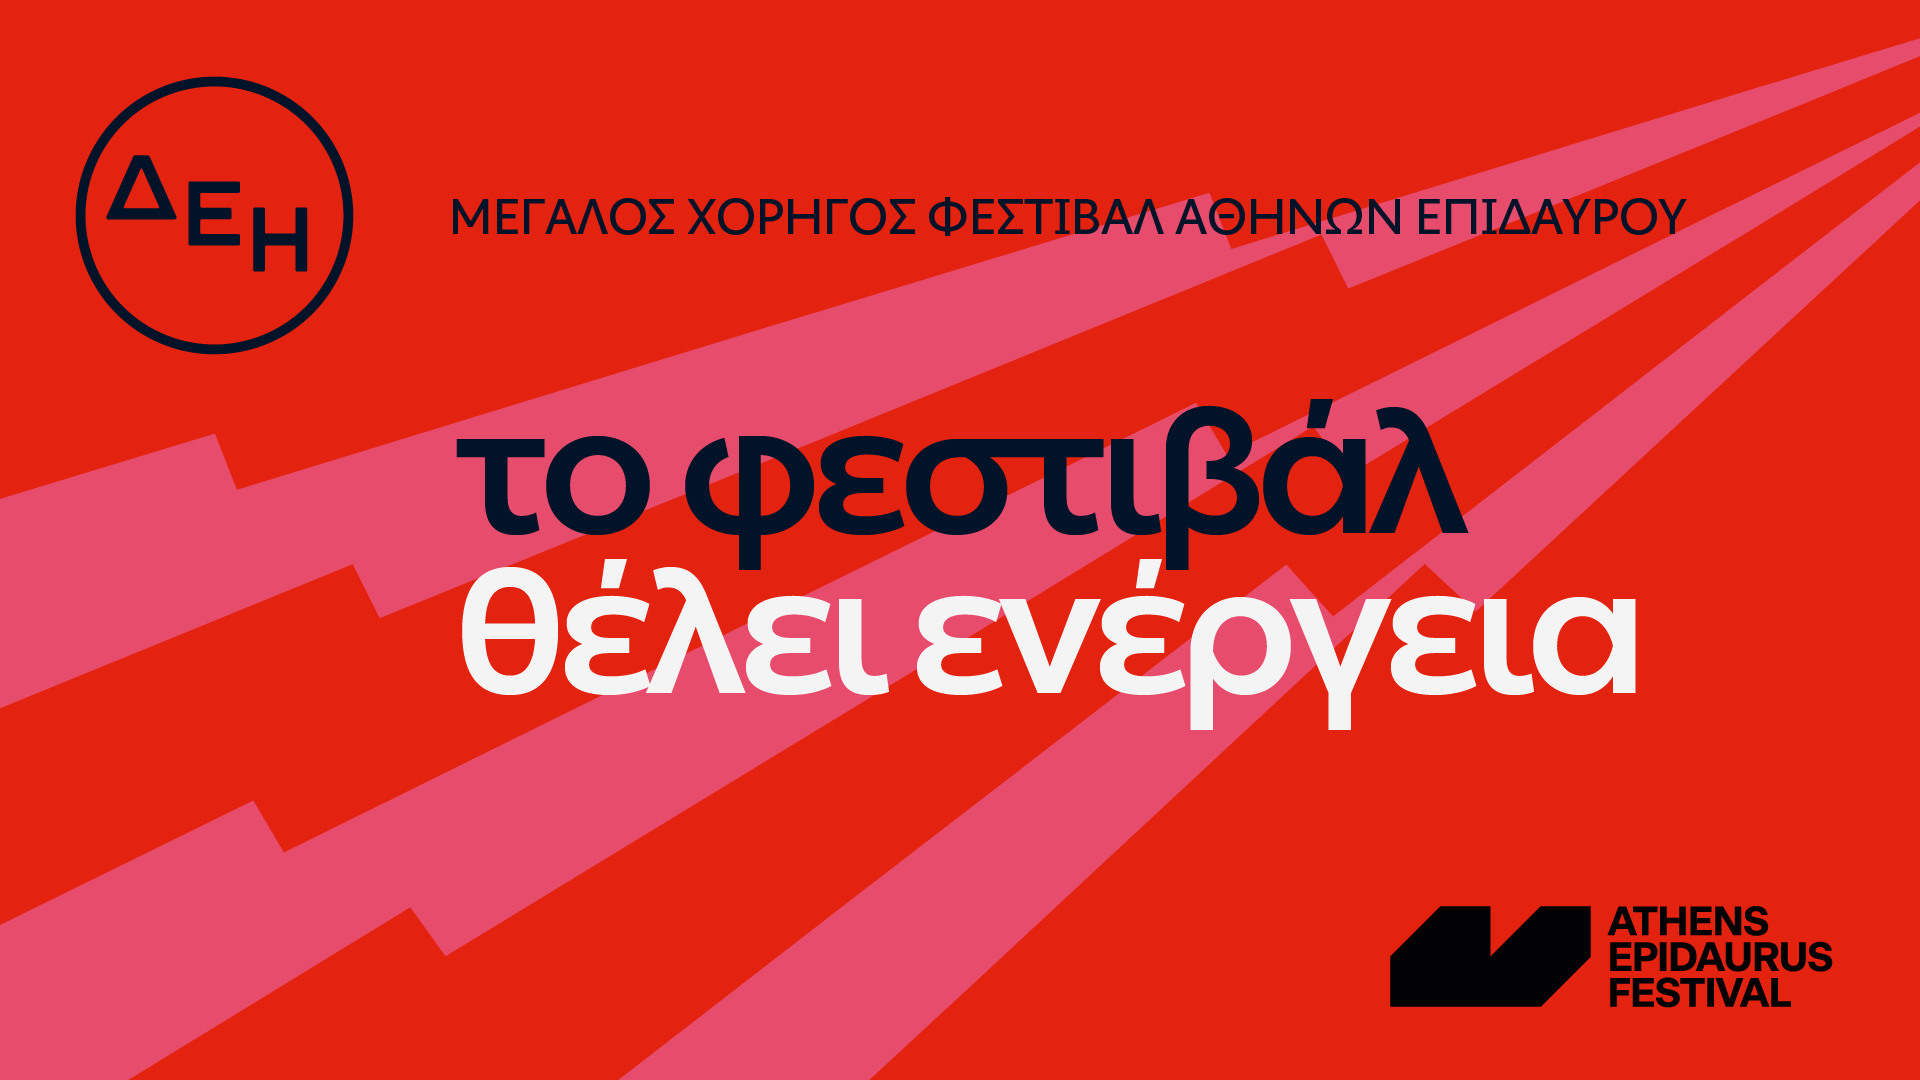 Το Φεστιβάλ Αθηνών Επιδαύρου θέλει ενέργεια